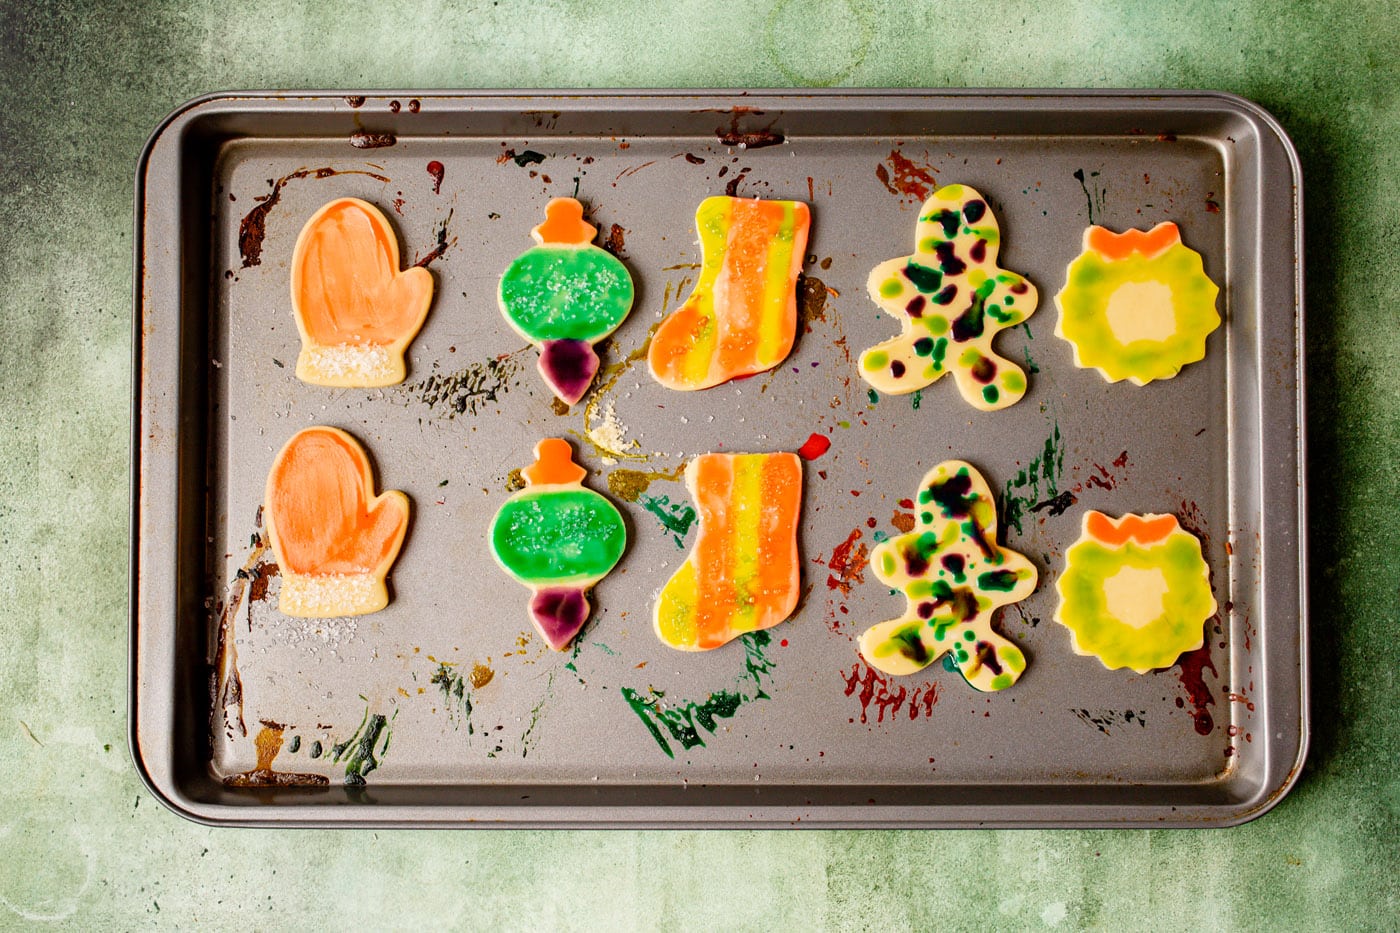 paintbrush cookies on a baking sheet